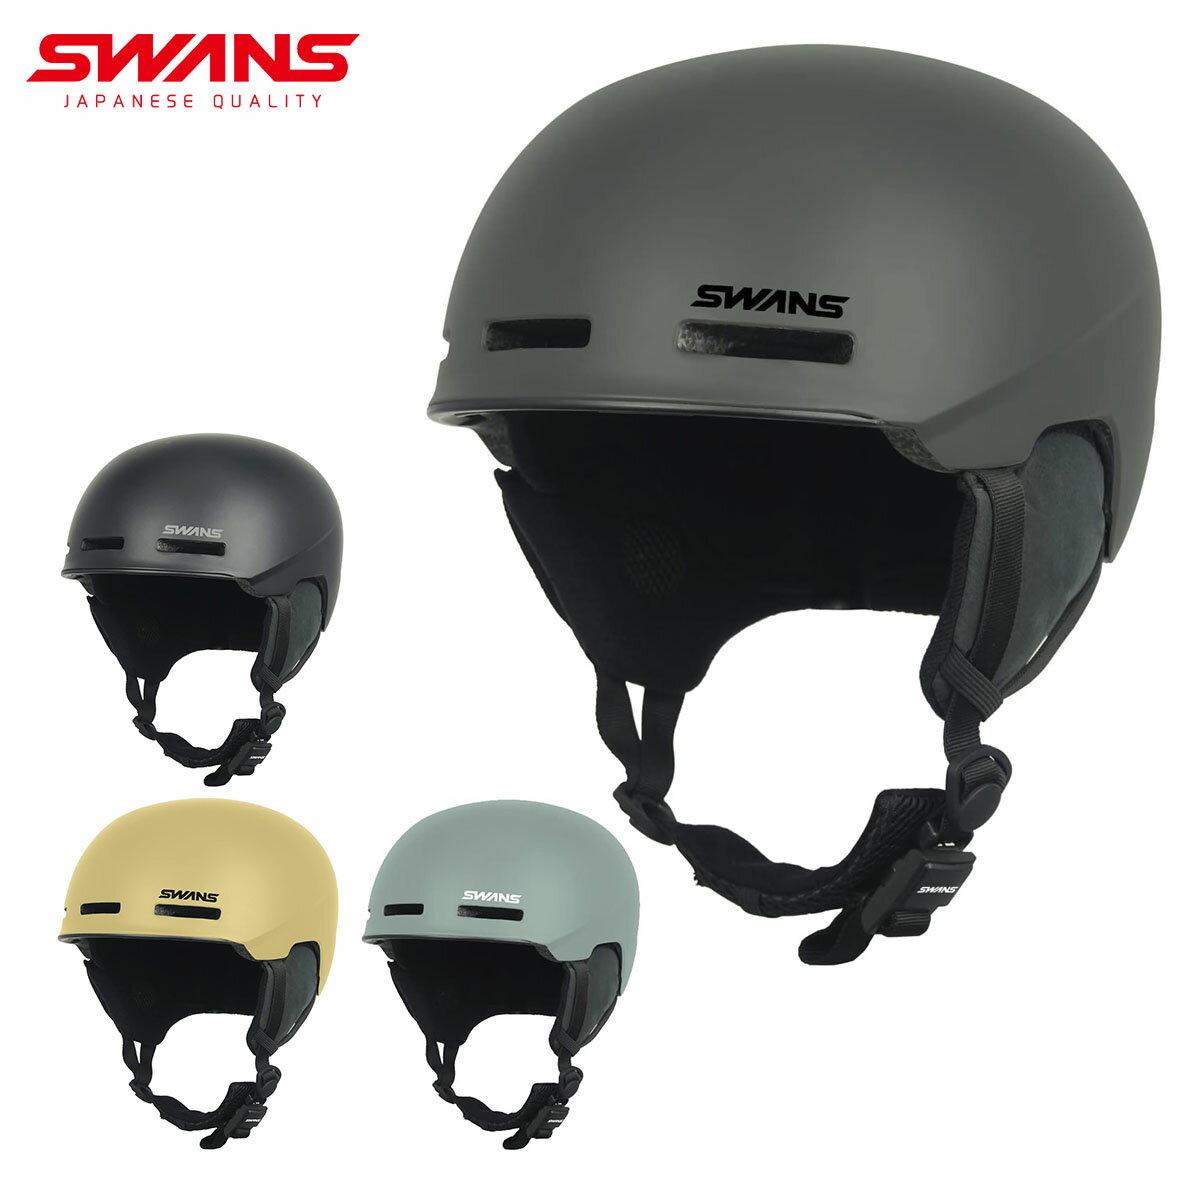 メーカー希望小売価格はメーカーカタログに基づいて掲載しています SWANS スワンズ スキーヘルメット■HSF-190軽量かつ優れた通気性のトライエアベンチレーションを搭載したフリーライドヘルメット■FUNCTION・トライエアベンチレーションフロントに空いた3つのエアインテークから外気を取り入れ、ゴーグル内部の湿気と共に換気。通気性に優れ、安全な視界を確保。・ライトウェイトシェル・エアーインテークホール・ゴーグルストッパー・サイズアジャスターダイアル・フィドロックスナップヘルメットバックル・着脱式イヤーパッド・アンチバイブレーションメッシュ■カラー・MGRY・MBK・SND・BL/G■サイズ・M：54-58cm(460g)・L：58-61cm(480g) ※メーカー企画書の情報で商品登録を行っております。予告なしに商品名と仕様変更される場合がございます。0